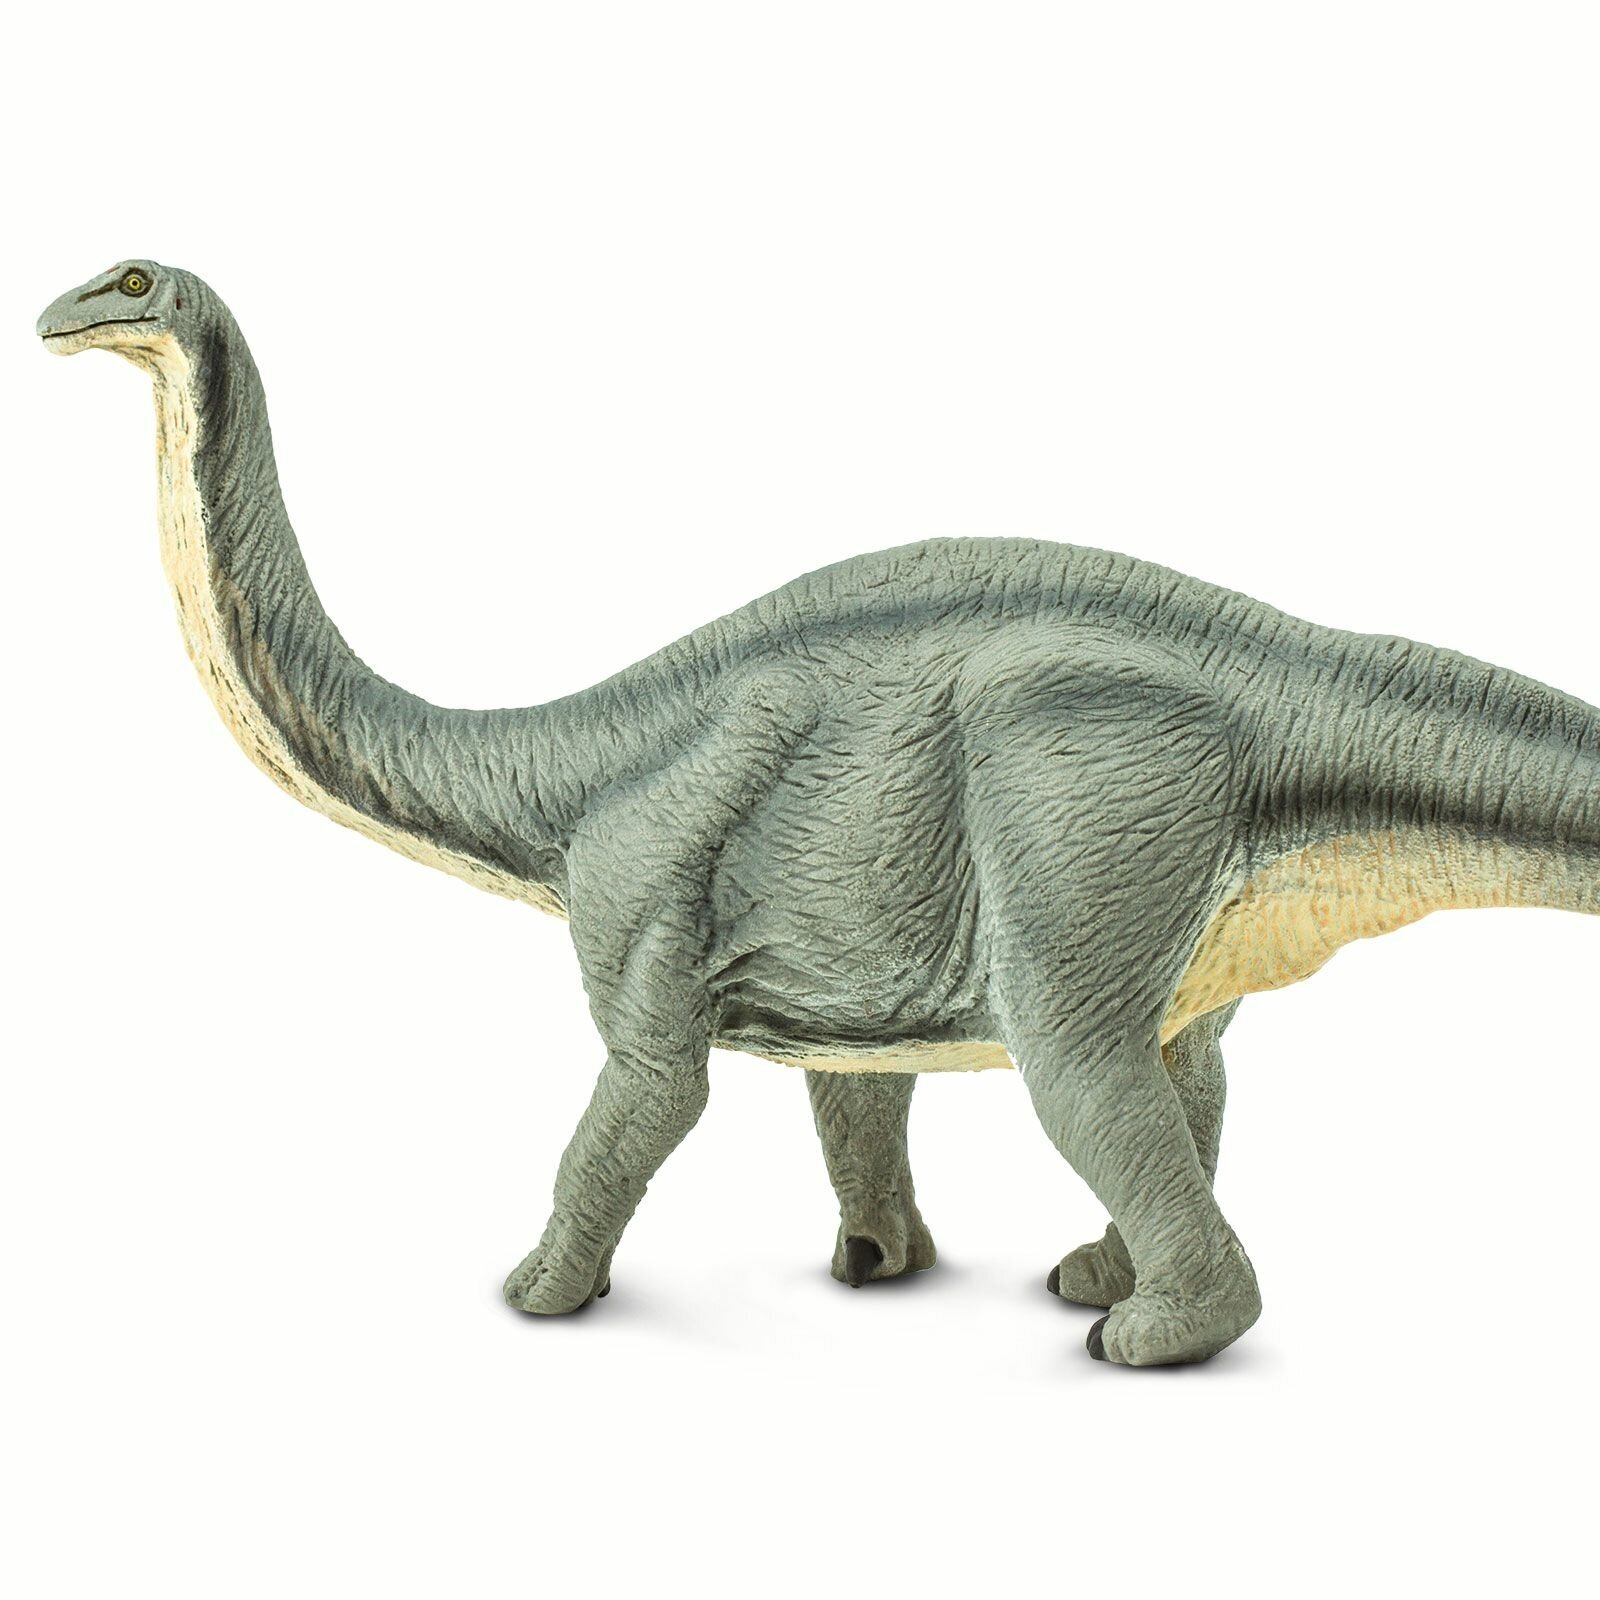 Фигурка животного динозавра Safari Ltd Апатозавр, для детей, игрушка коллекционная, 300429